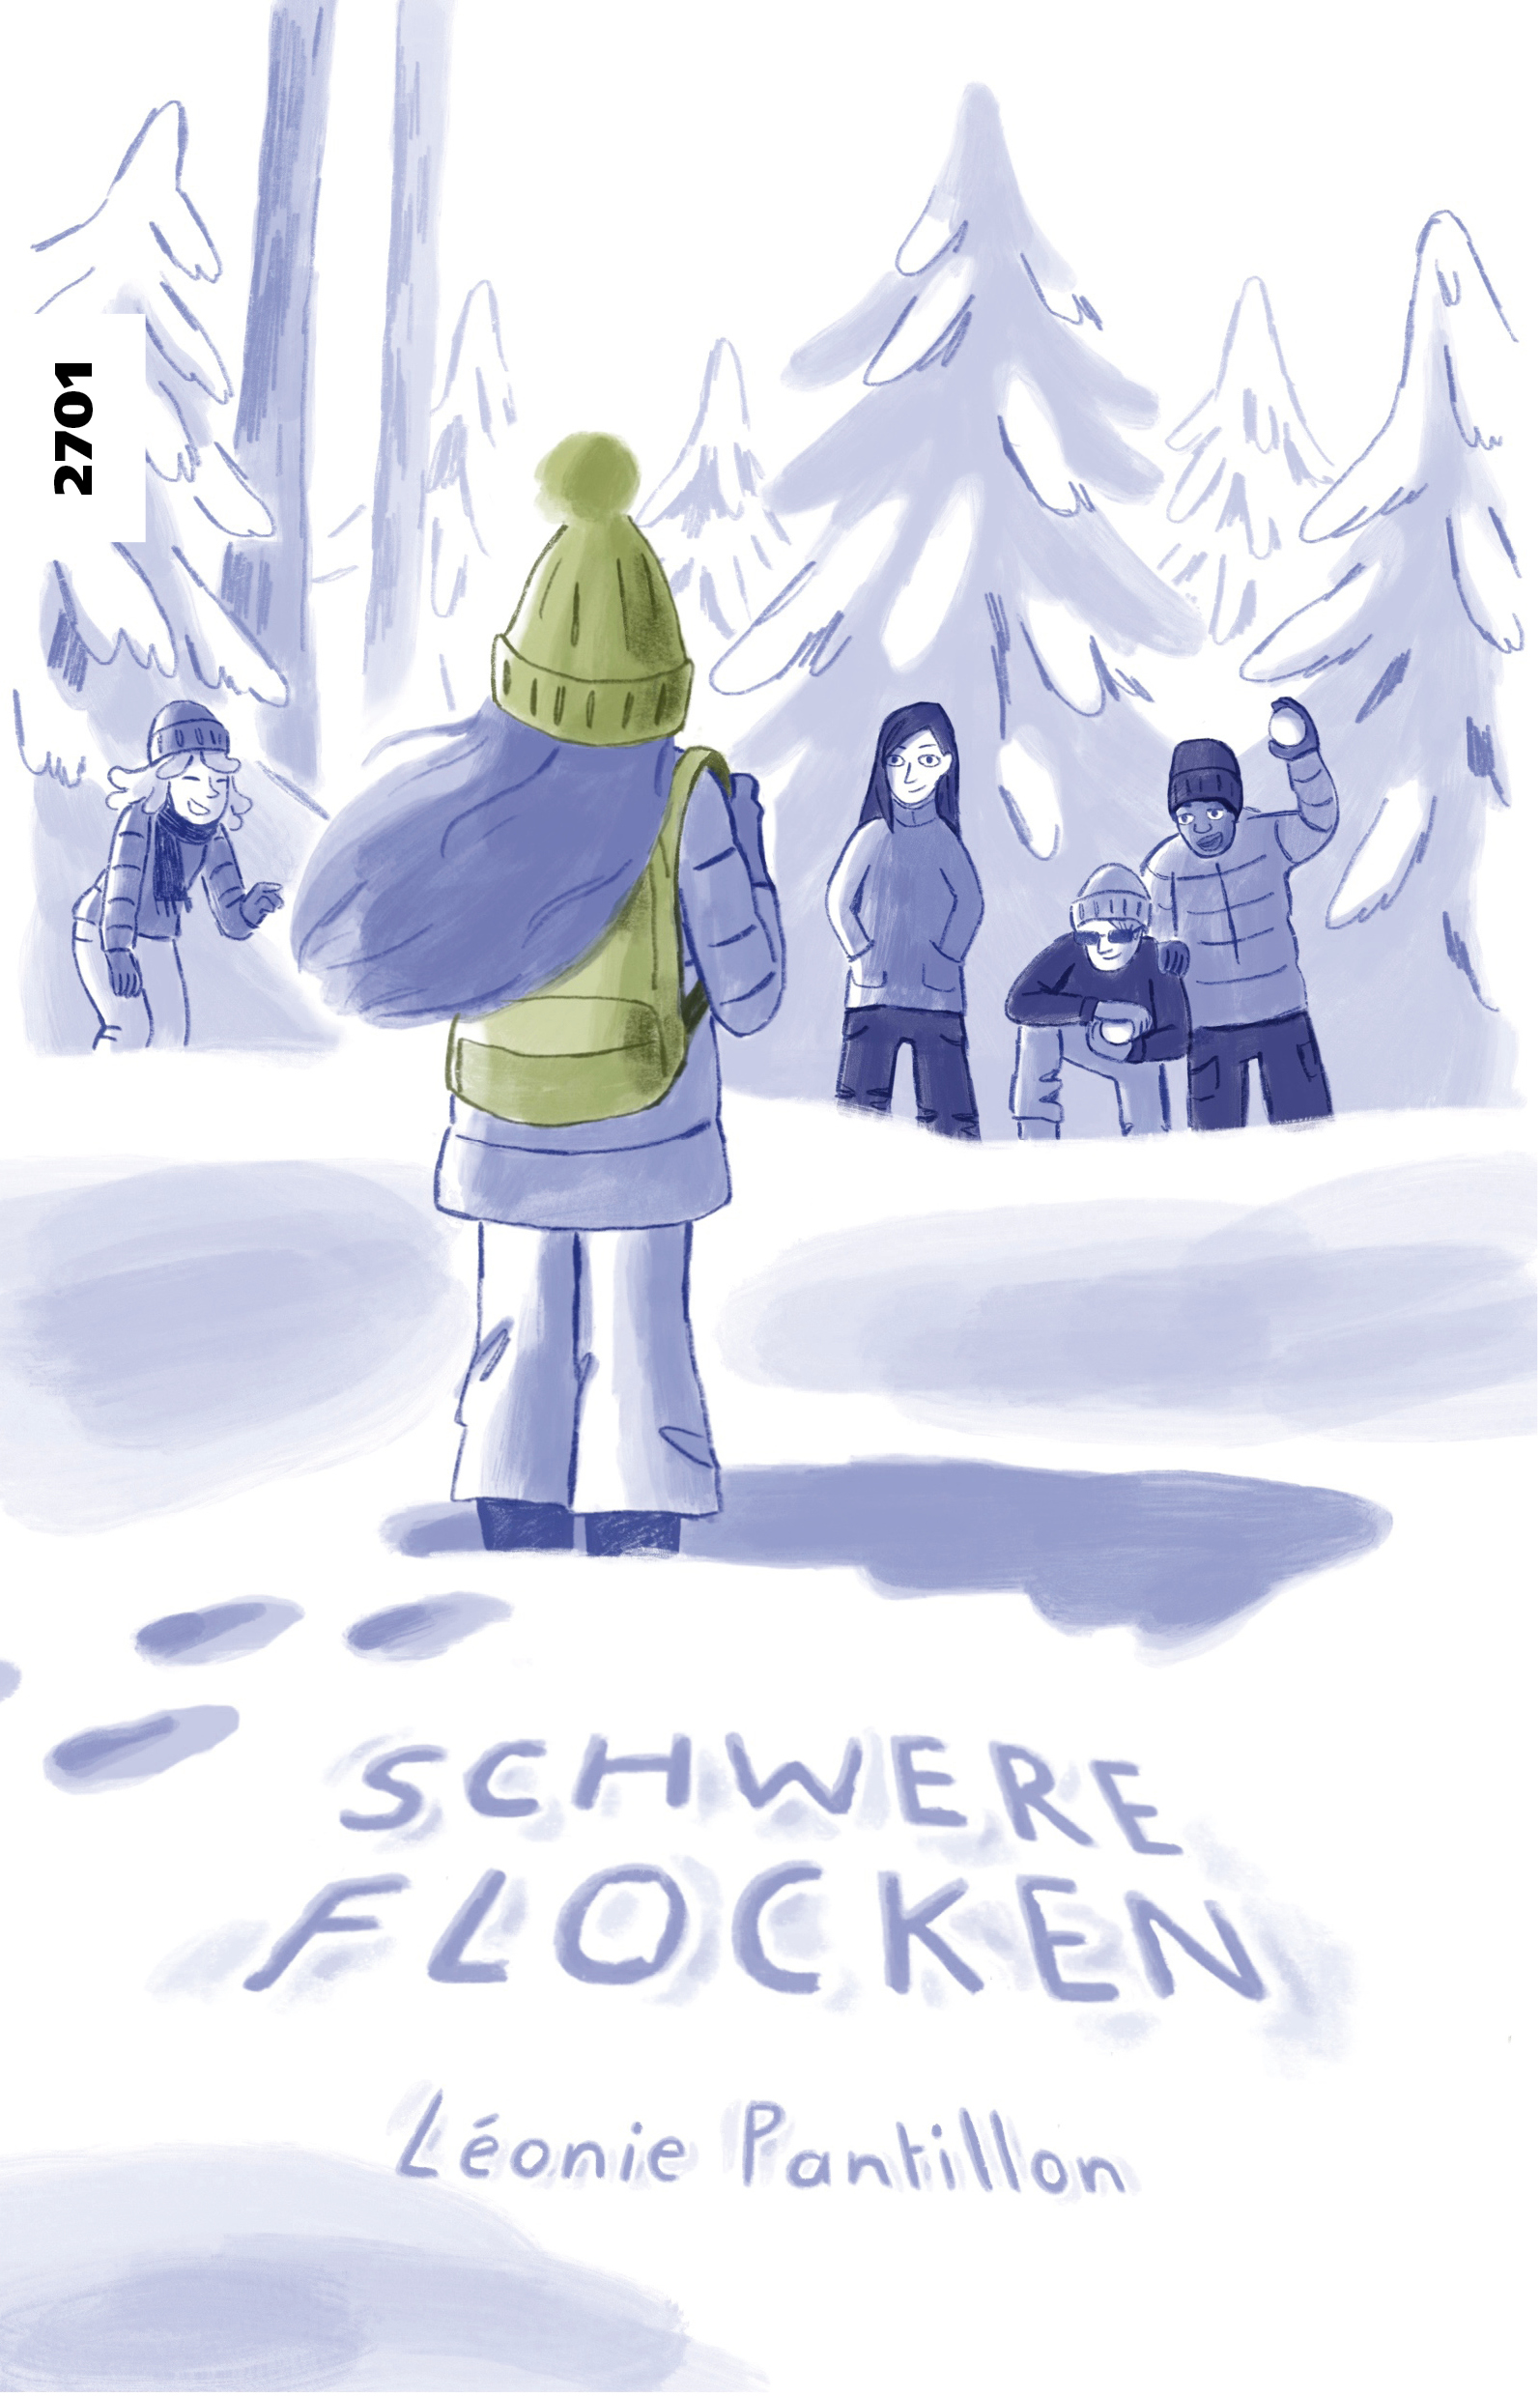 Schwere Flocken, ein Comic von Leonie Pantillon, SJW Verlag, Mobbing, Ausgrenzung